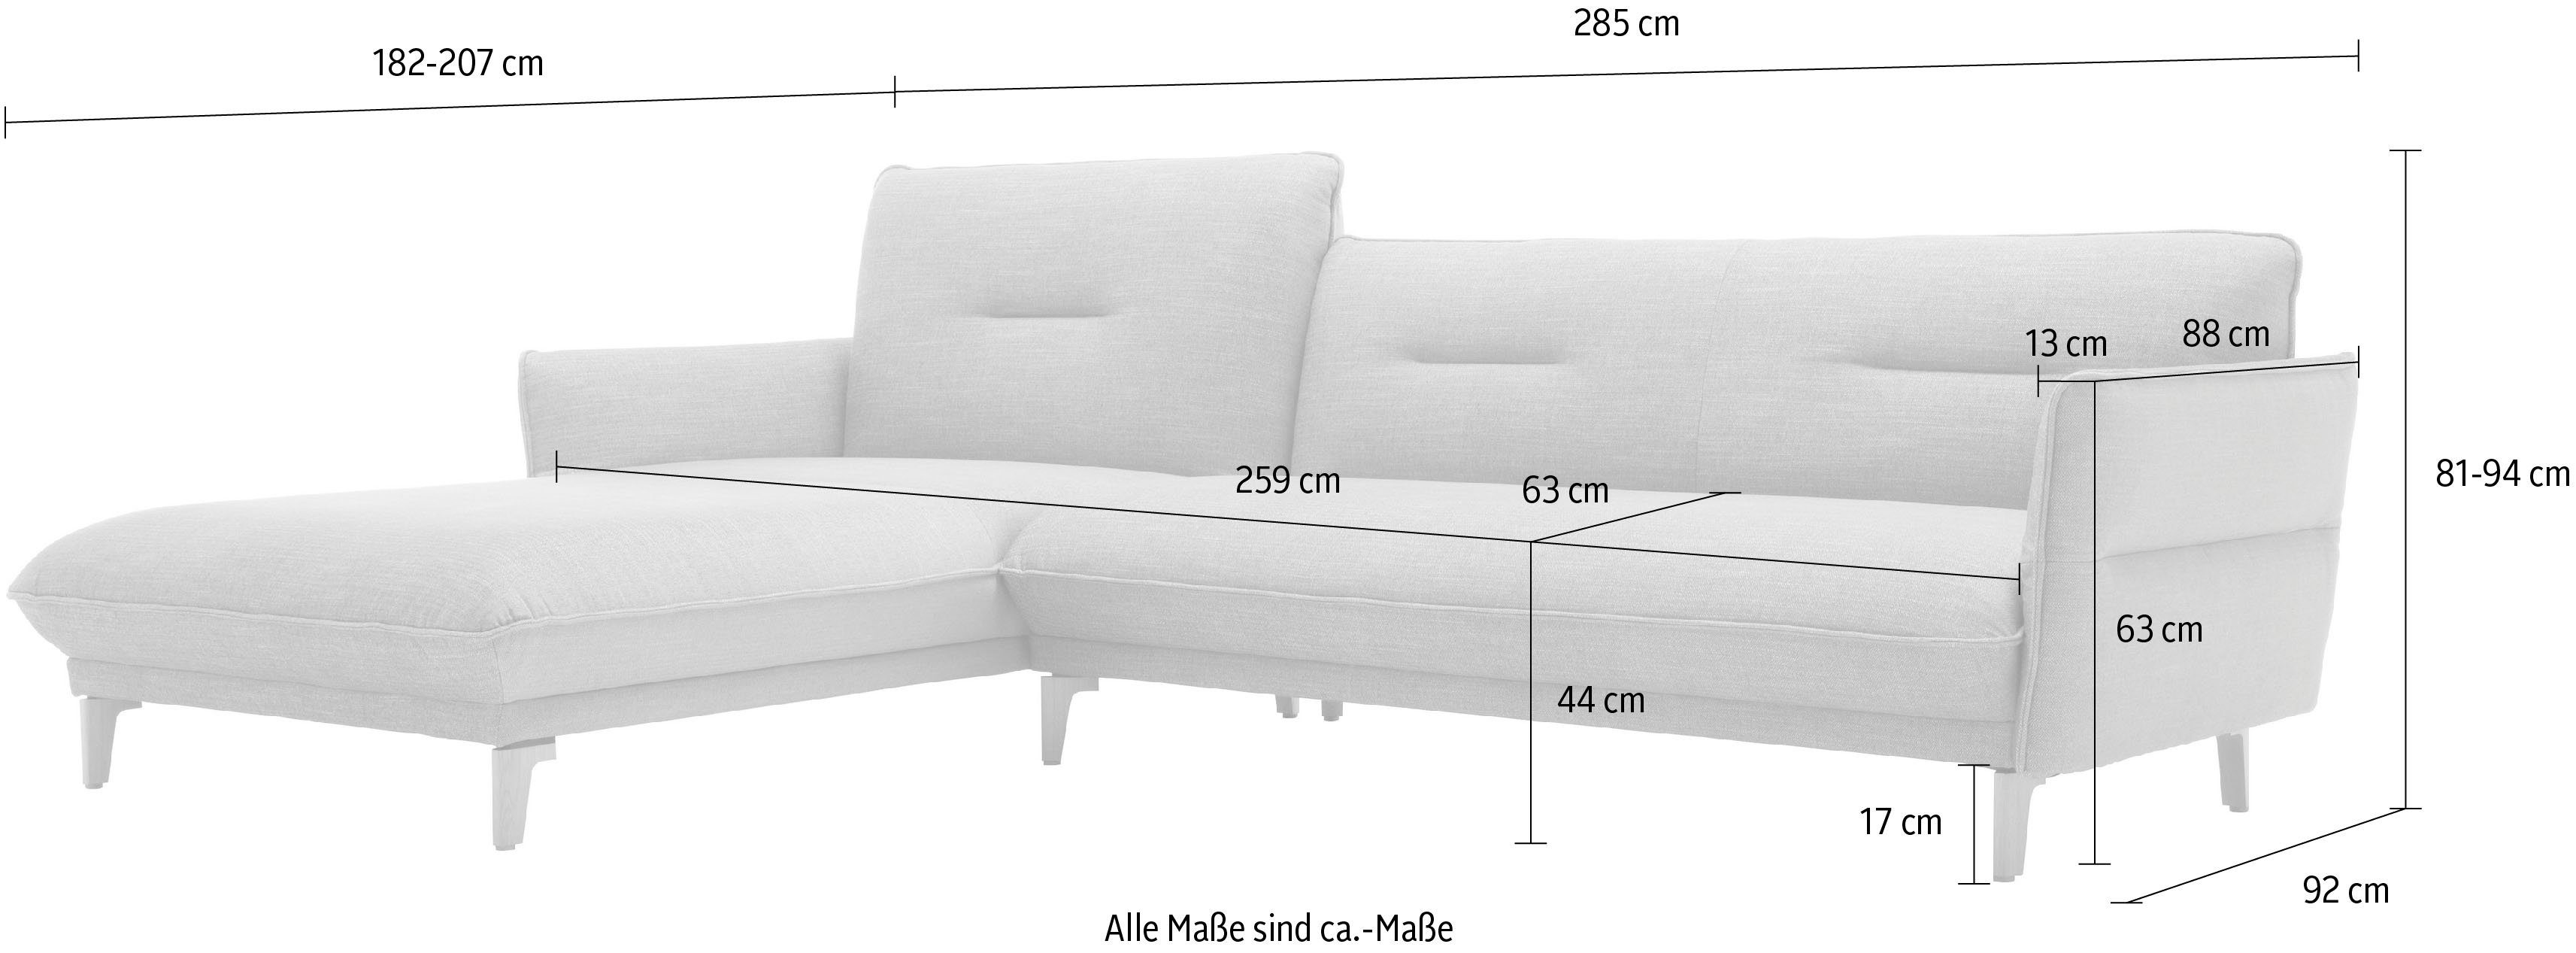 Neigefunktion, saphierblau/steingrau mit Ecksofa hoher hs.430, Recamiere Breite 068-74 Rücken hülsta cm 285 sofa